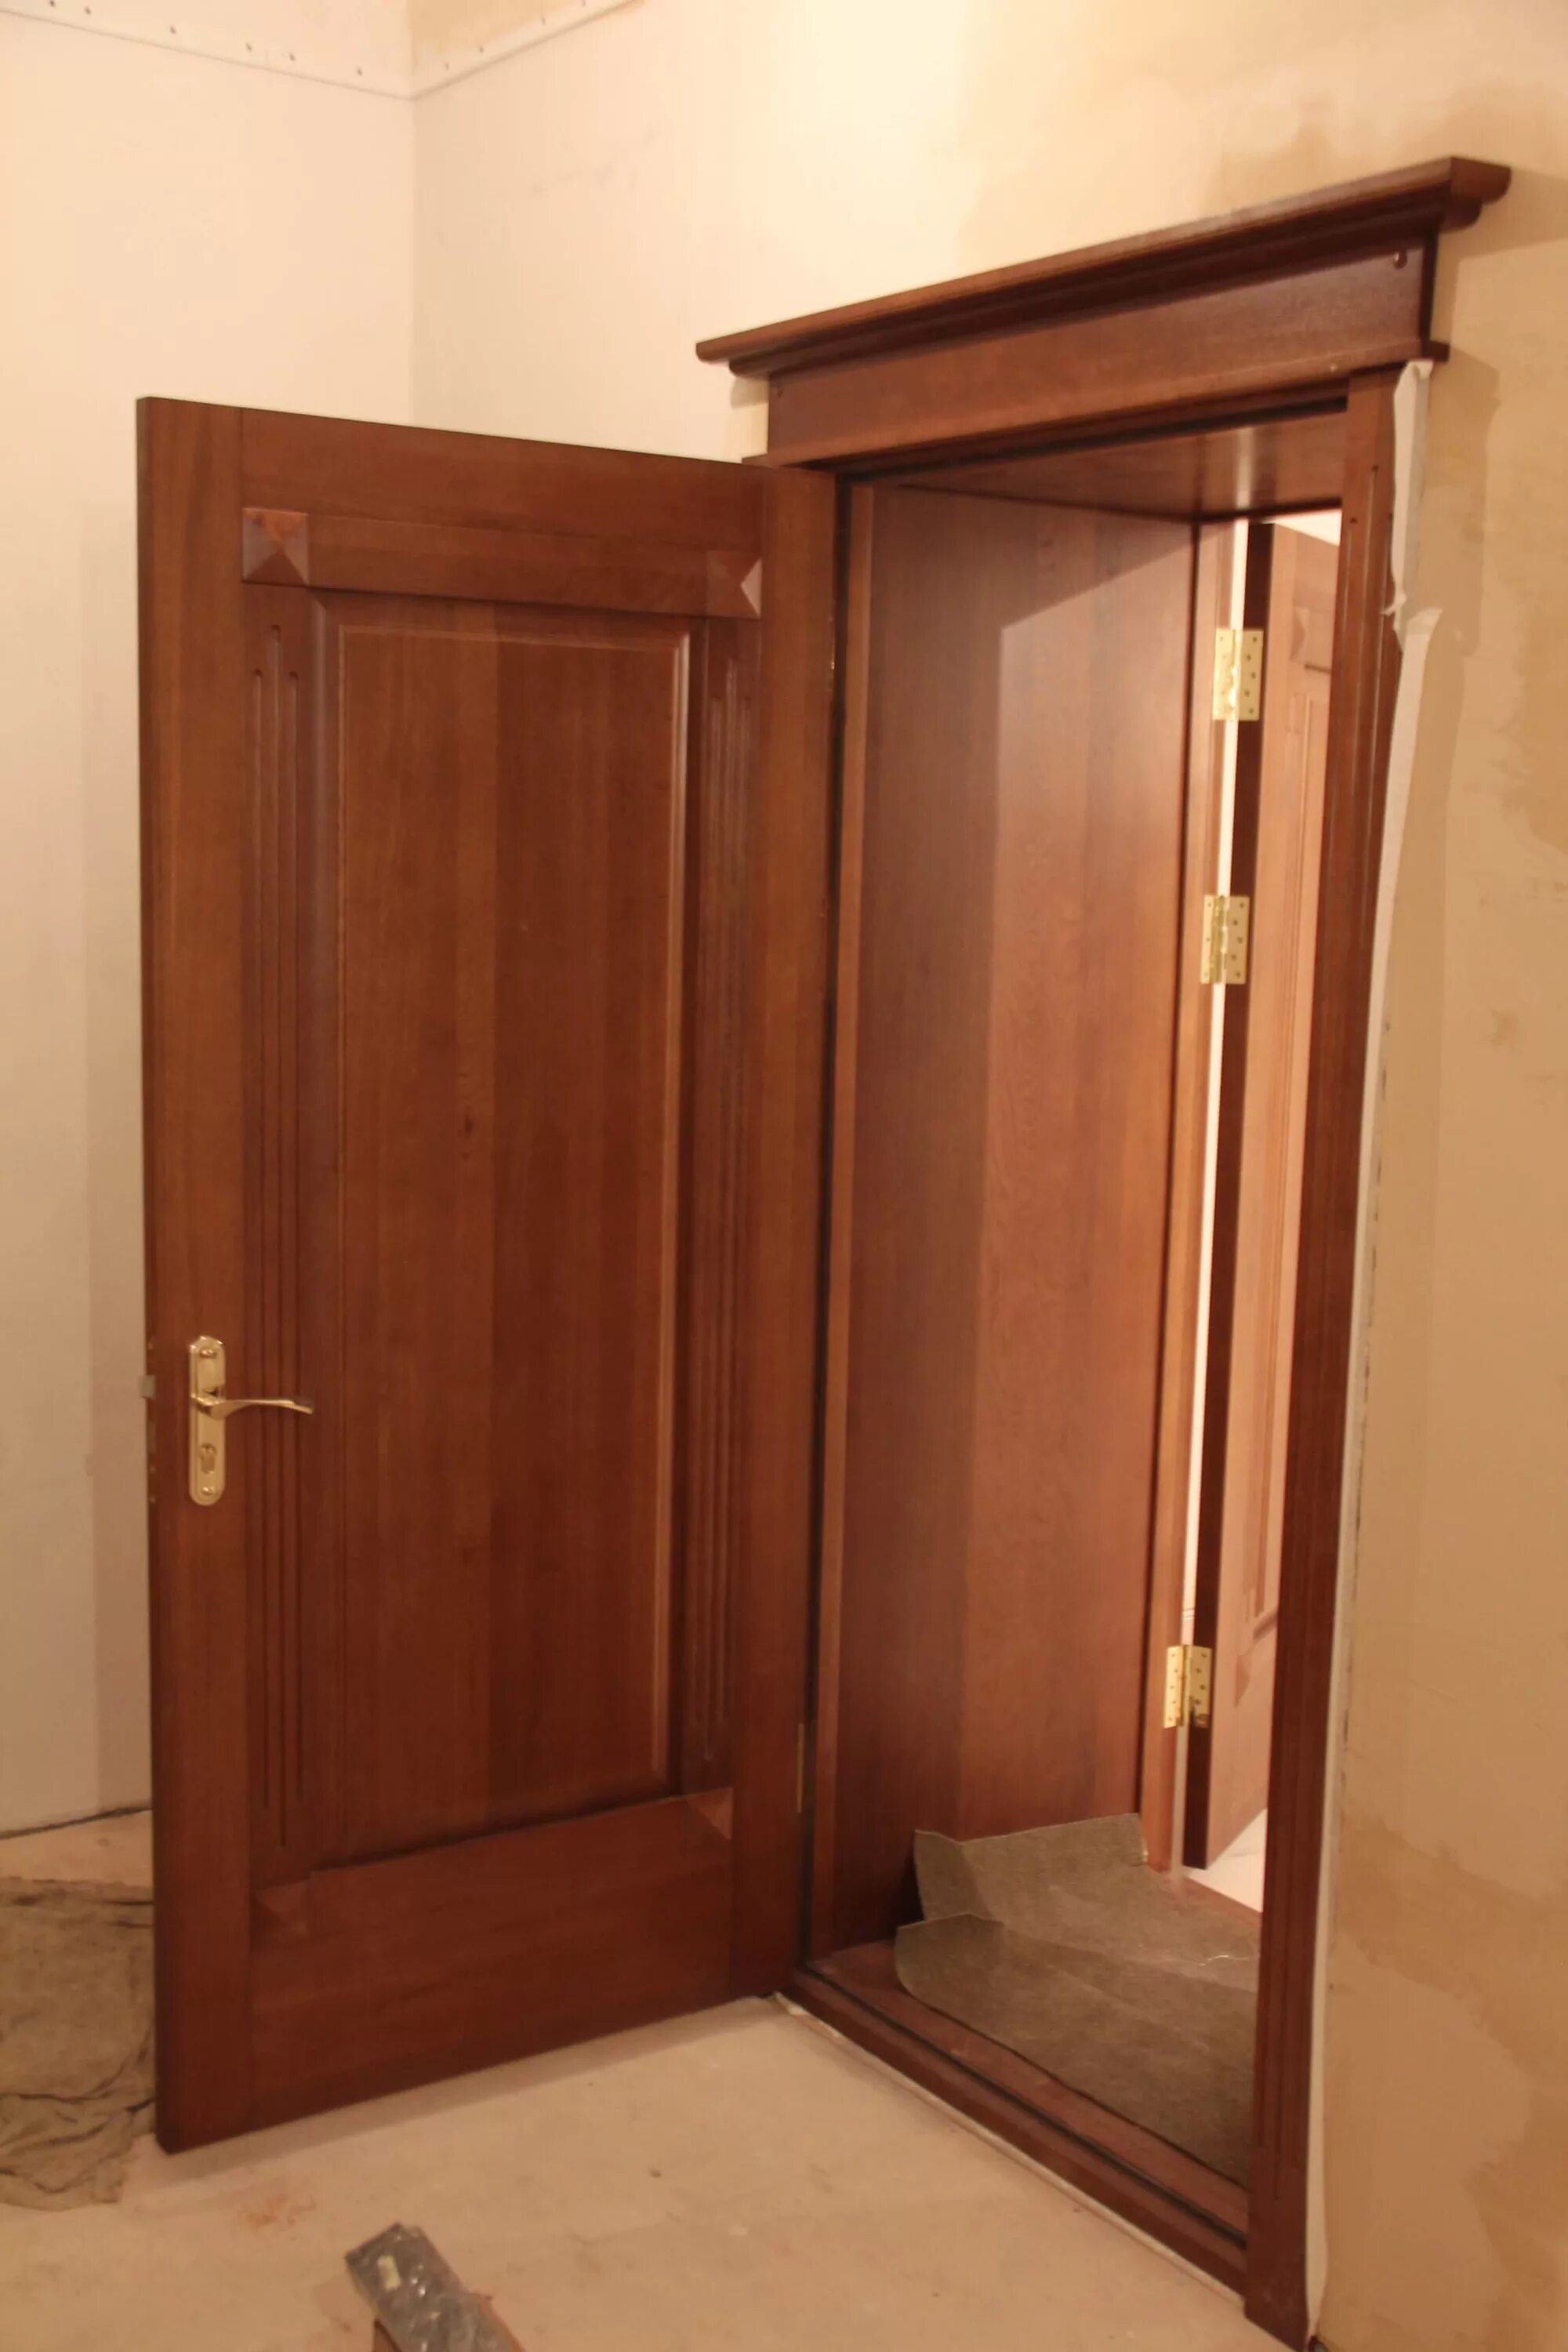 Вторая входная дверь в квартиру. Дверные коробки для входных дверей. Двойная дверь входная. Двойная дверь входная в одной коробке.